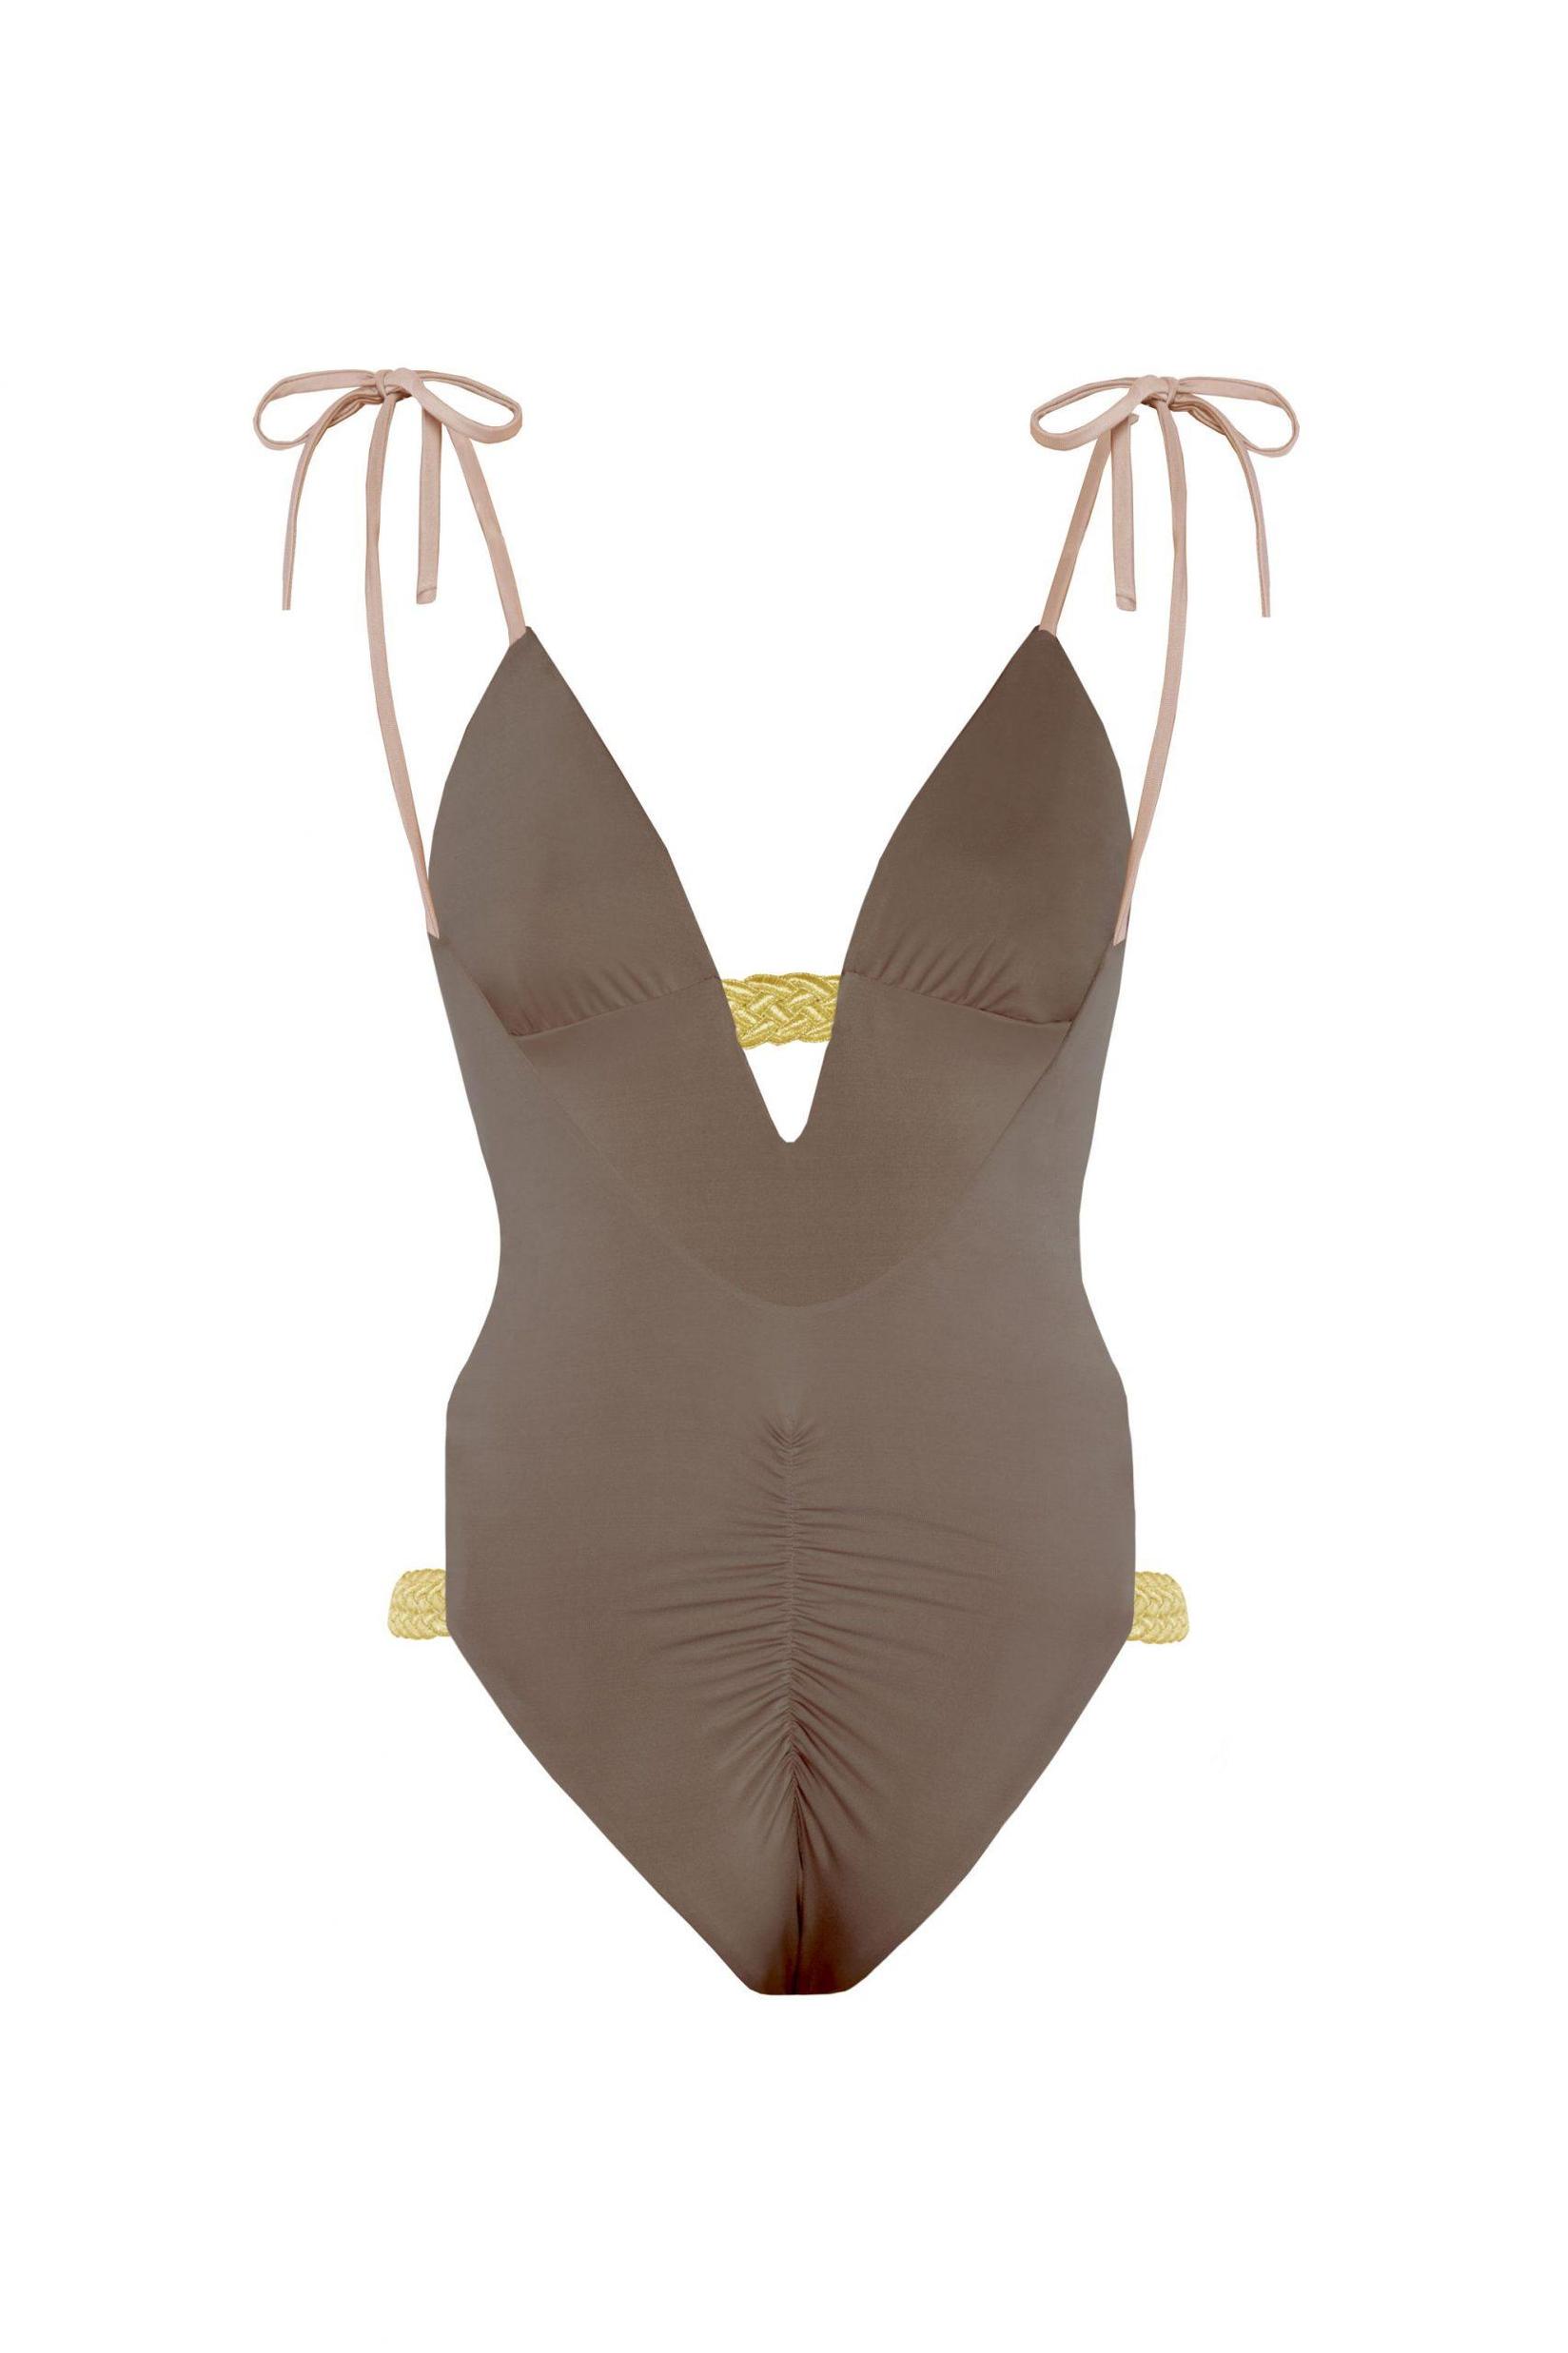 Selected image for DEVI COLLECTION Ženski jednodelni kupaći kostim Asya braon